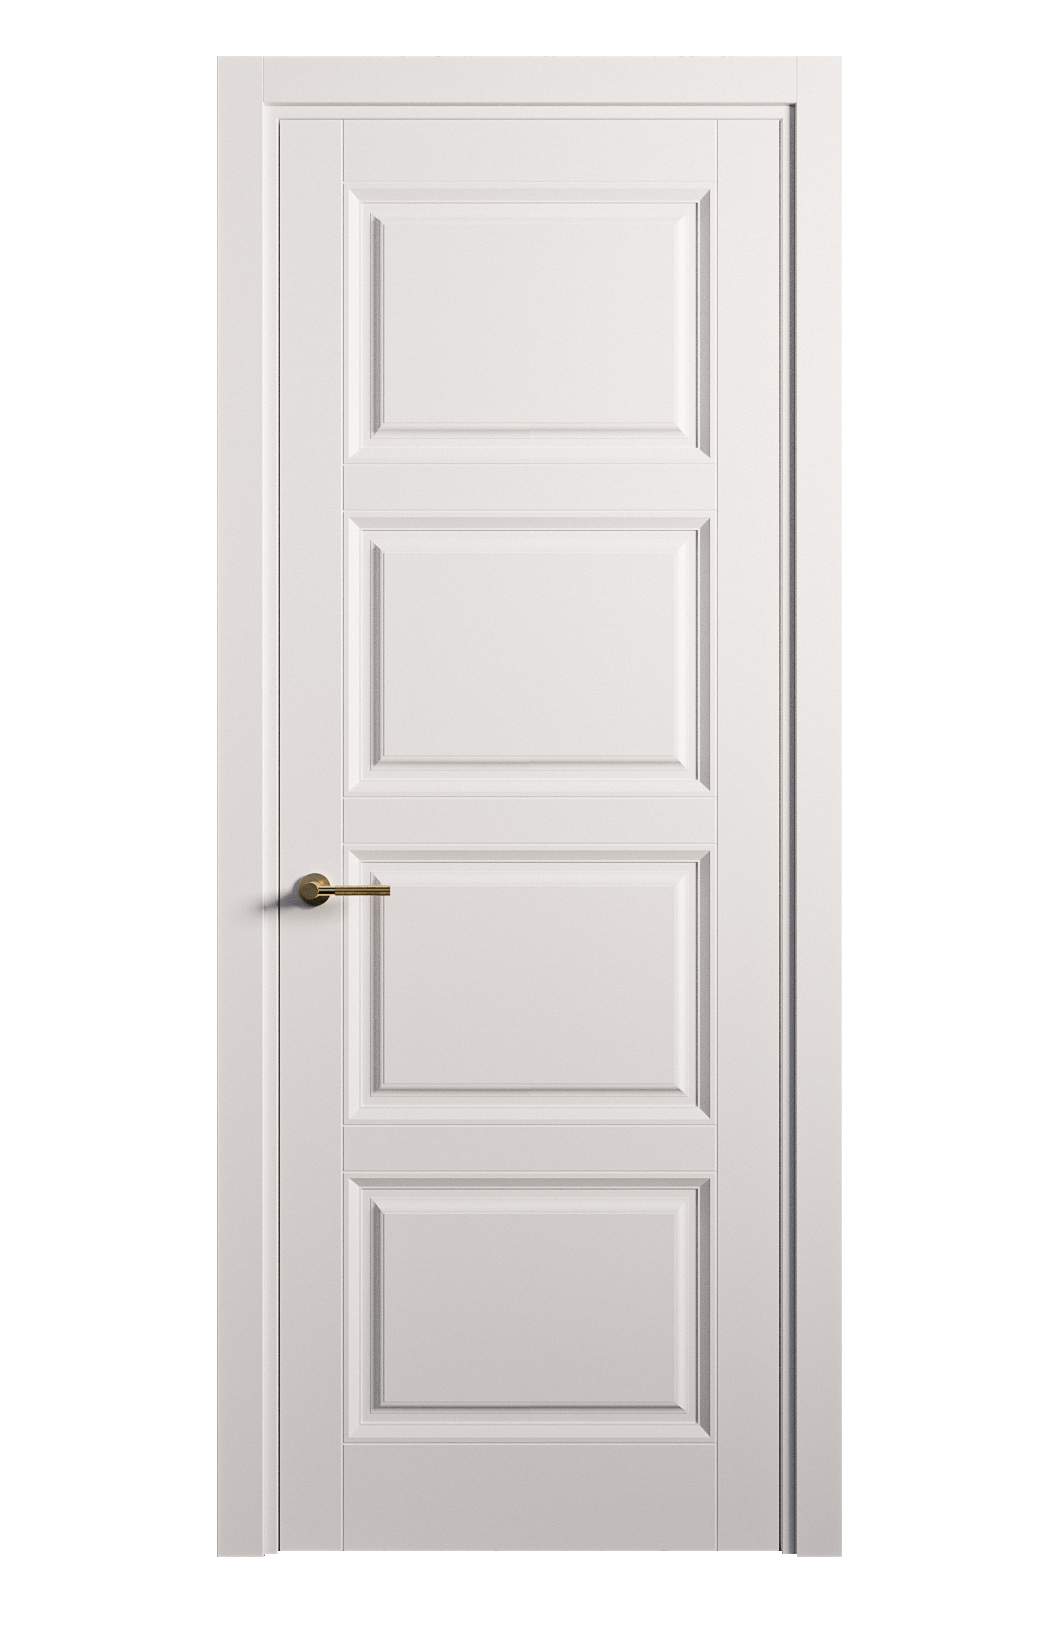 Межкомнатная дверь Venezia-4 глухая эмаль ral 9003 25819